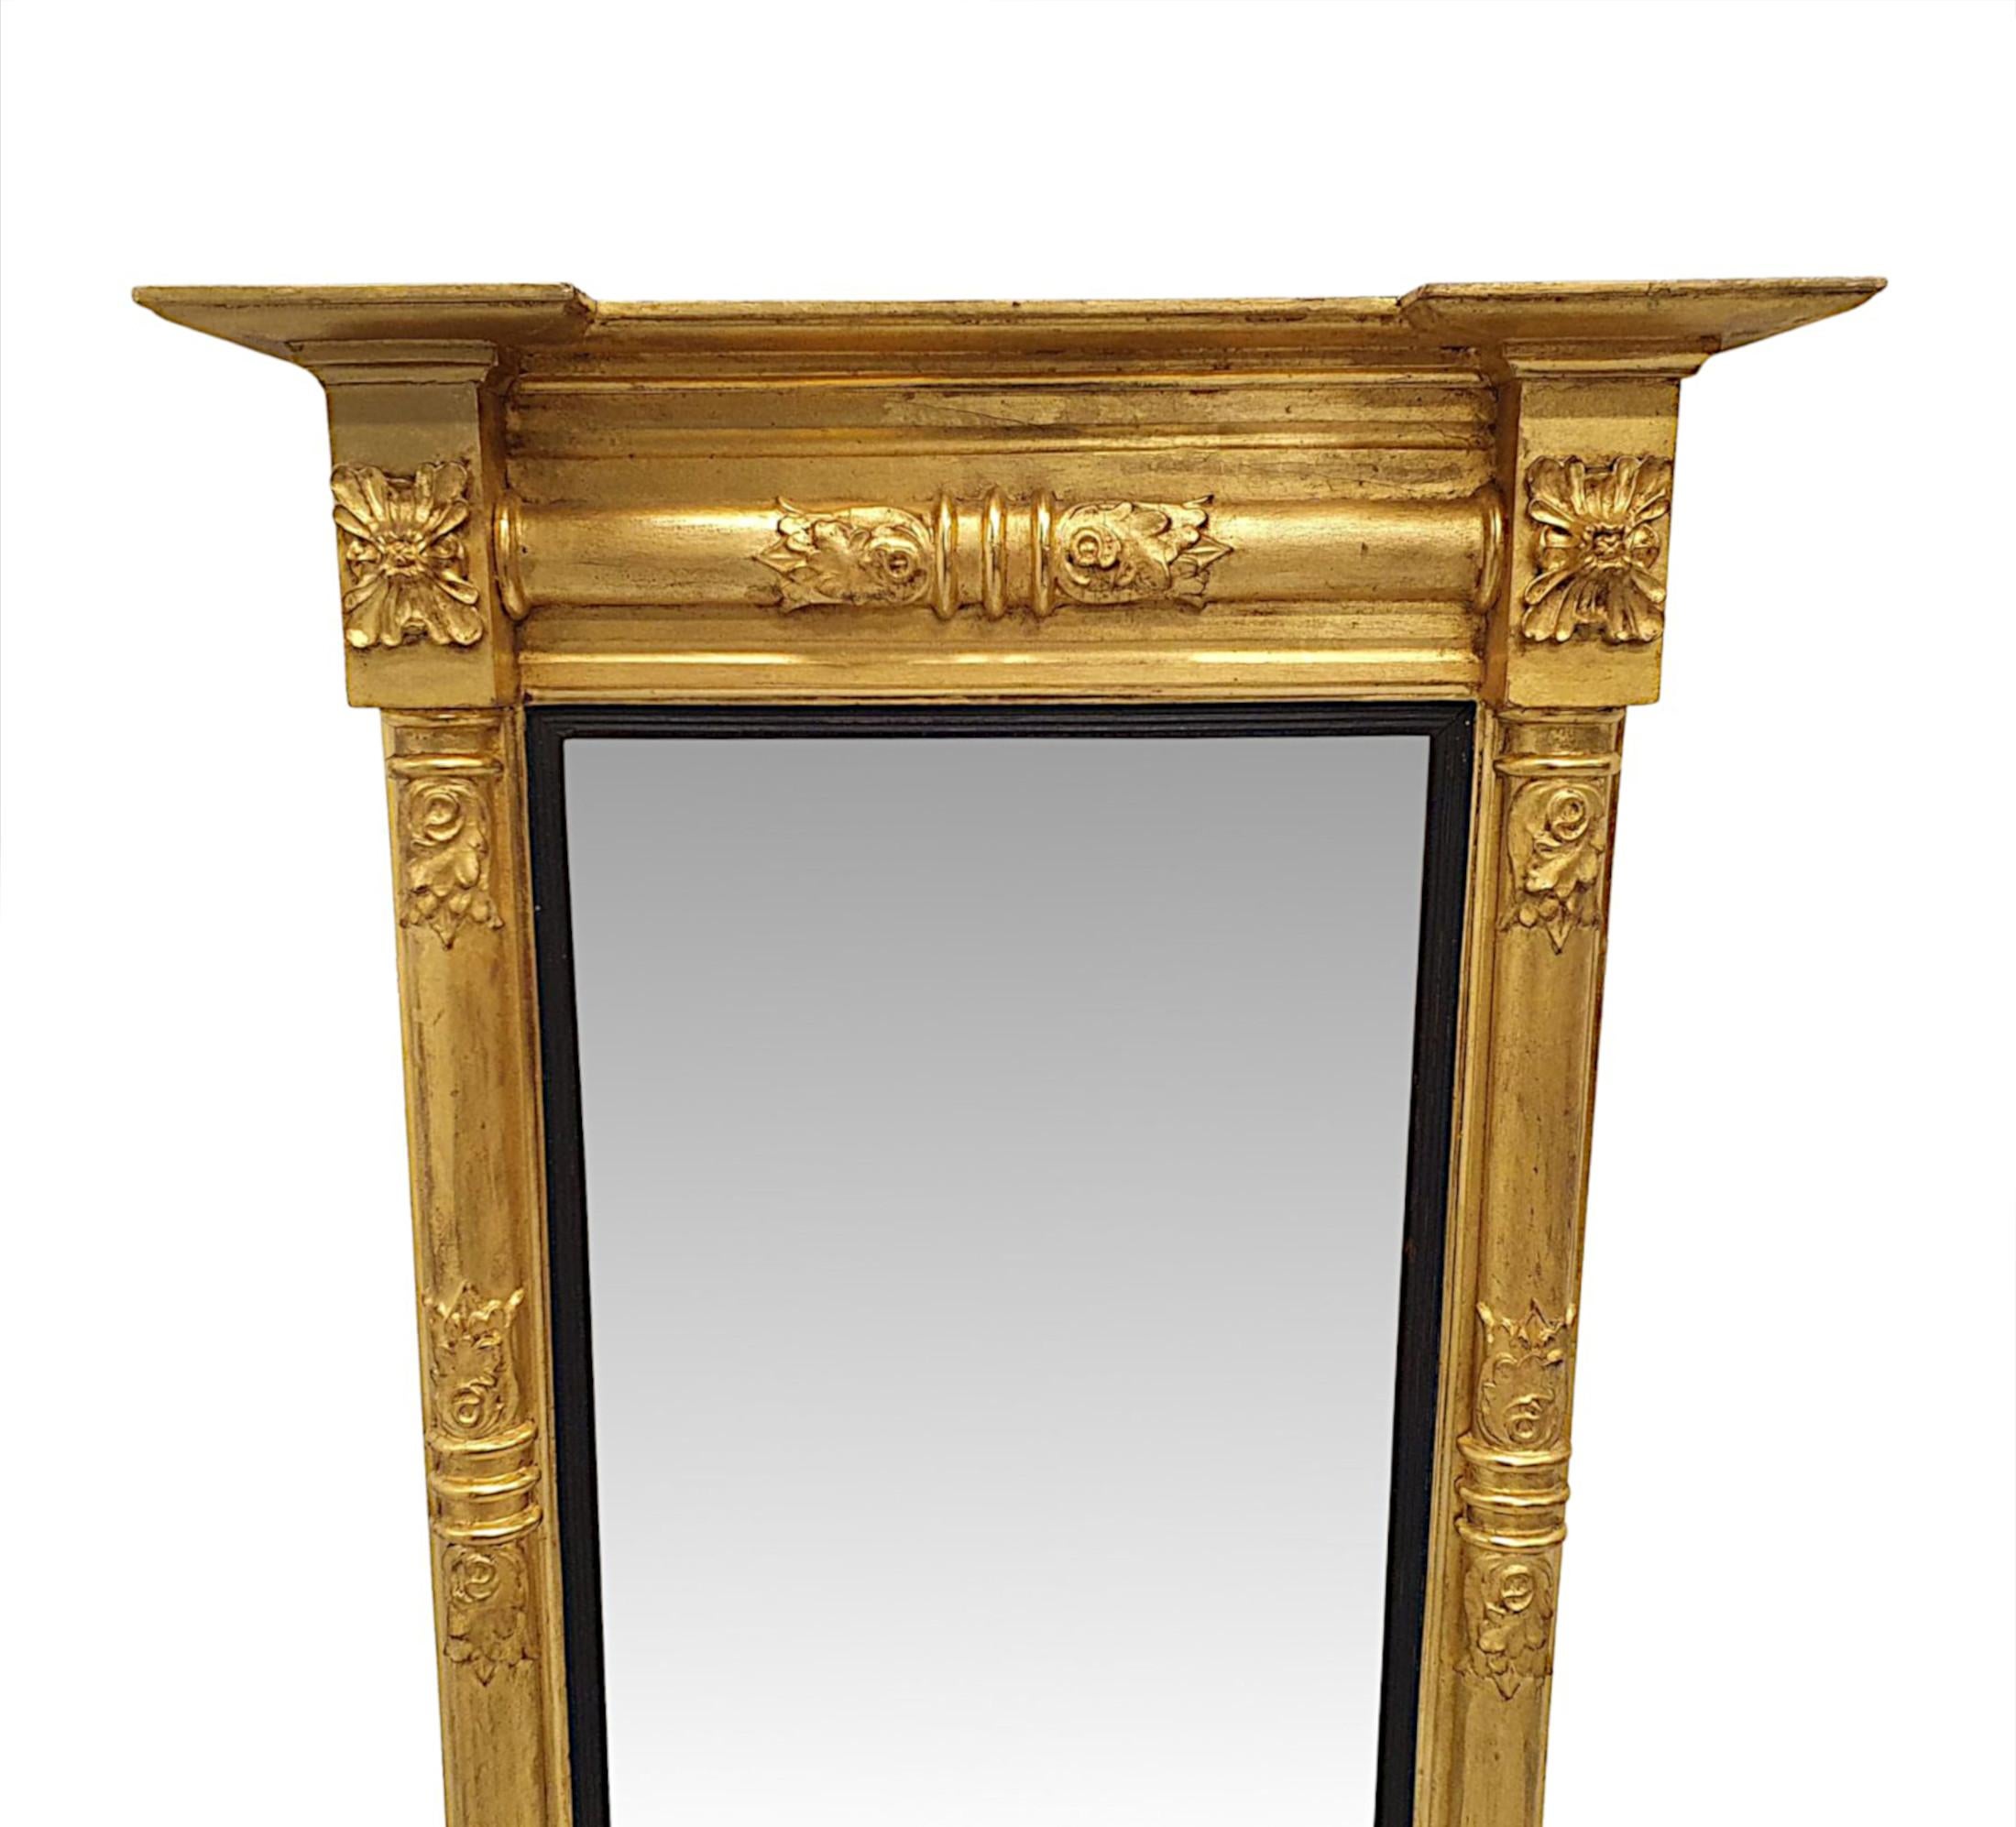 Eine sehr seltene frühen 19. Jahrhundert William IV Vergoldung Pier Spiegel fein von Hand geschnitzt und von außergewöhnlicher Qualität.  Der geformte und kannelierte Rahmen aus vergoldetem Holz wird von einem überhängenden, umgekehrten Frontgiebel